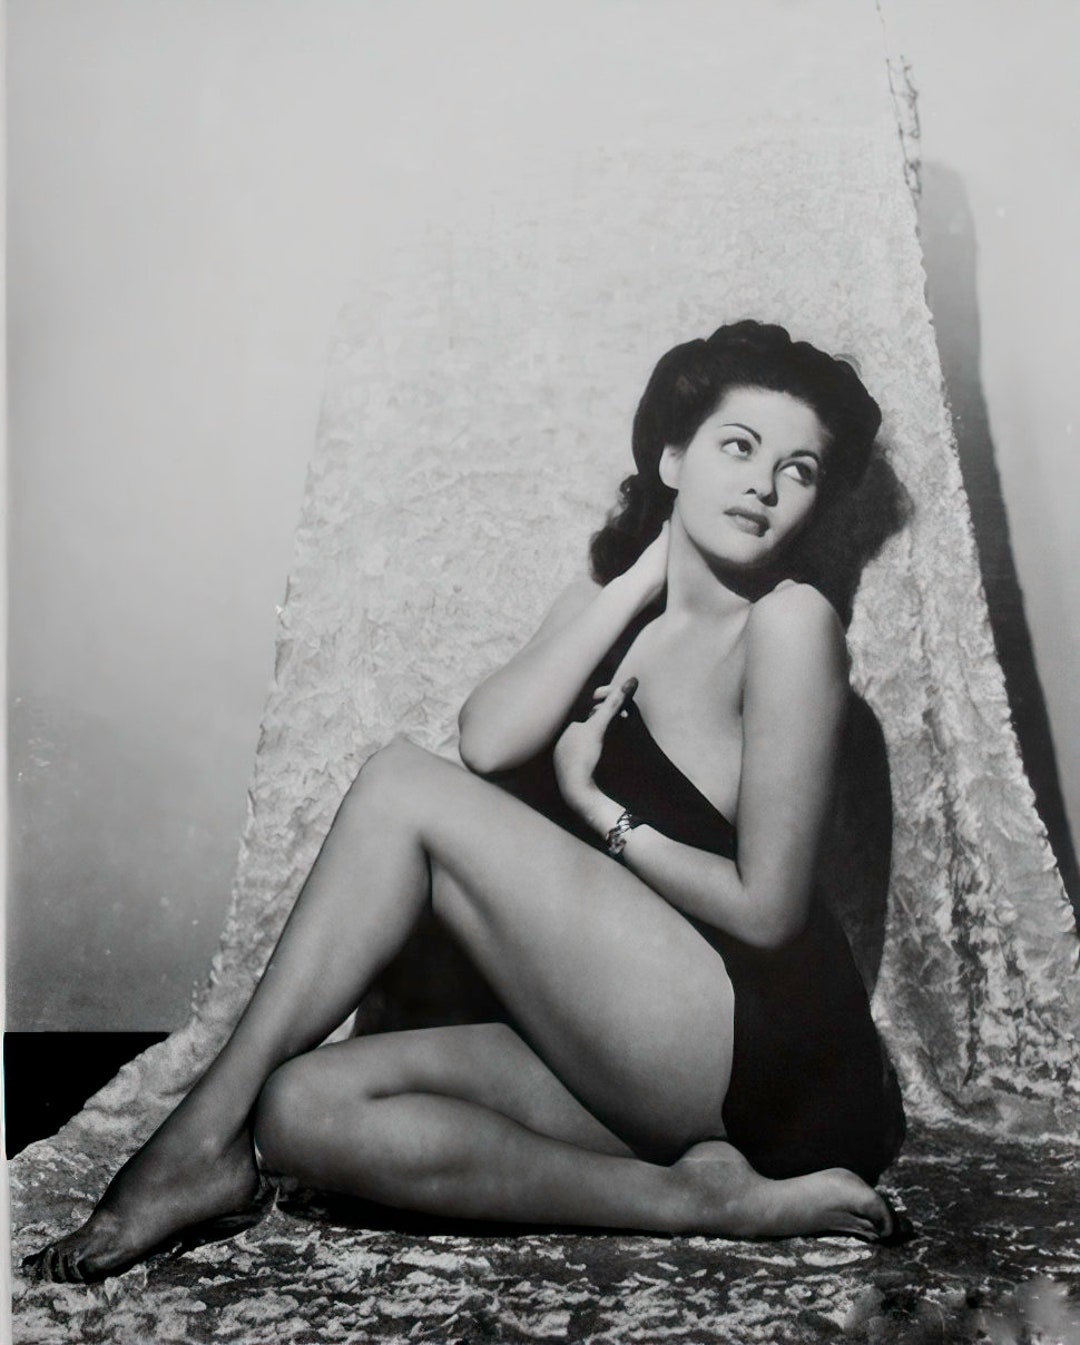 Yvonne De Carlo Nude Circa 1940s Black and White